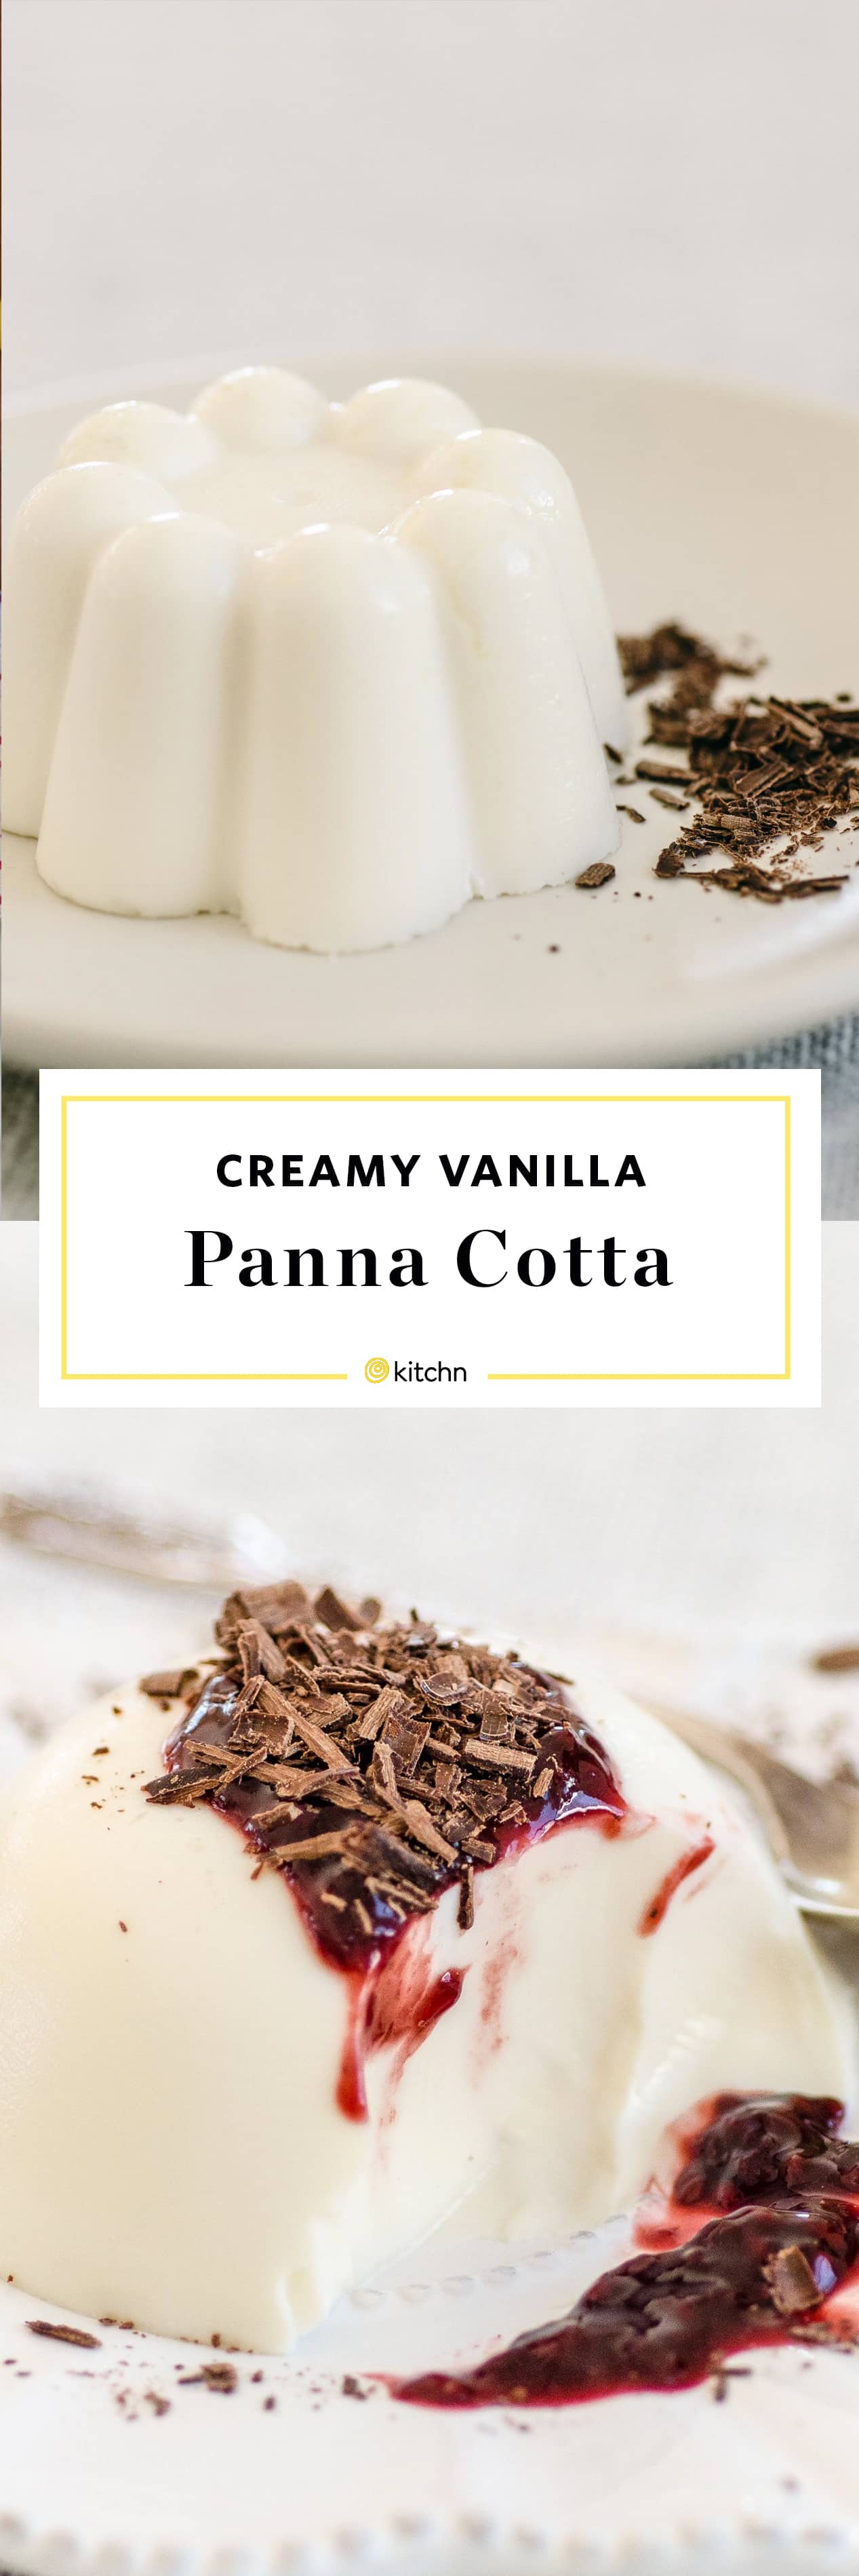 How To Make Panna Cotta | Kitchn